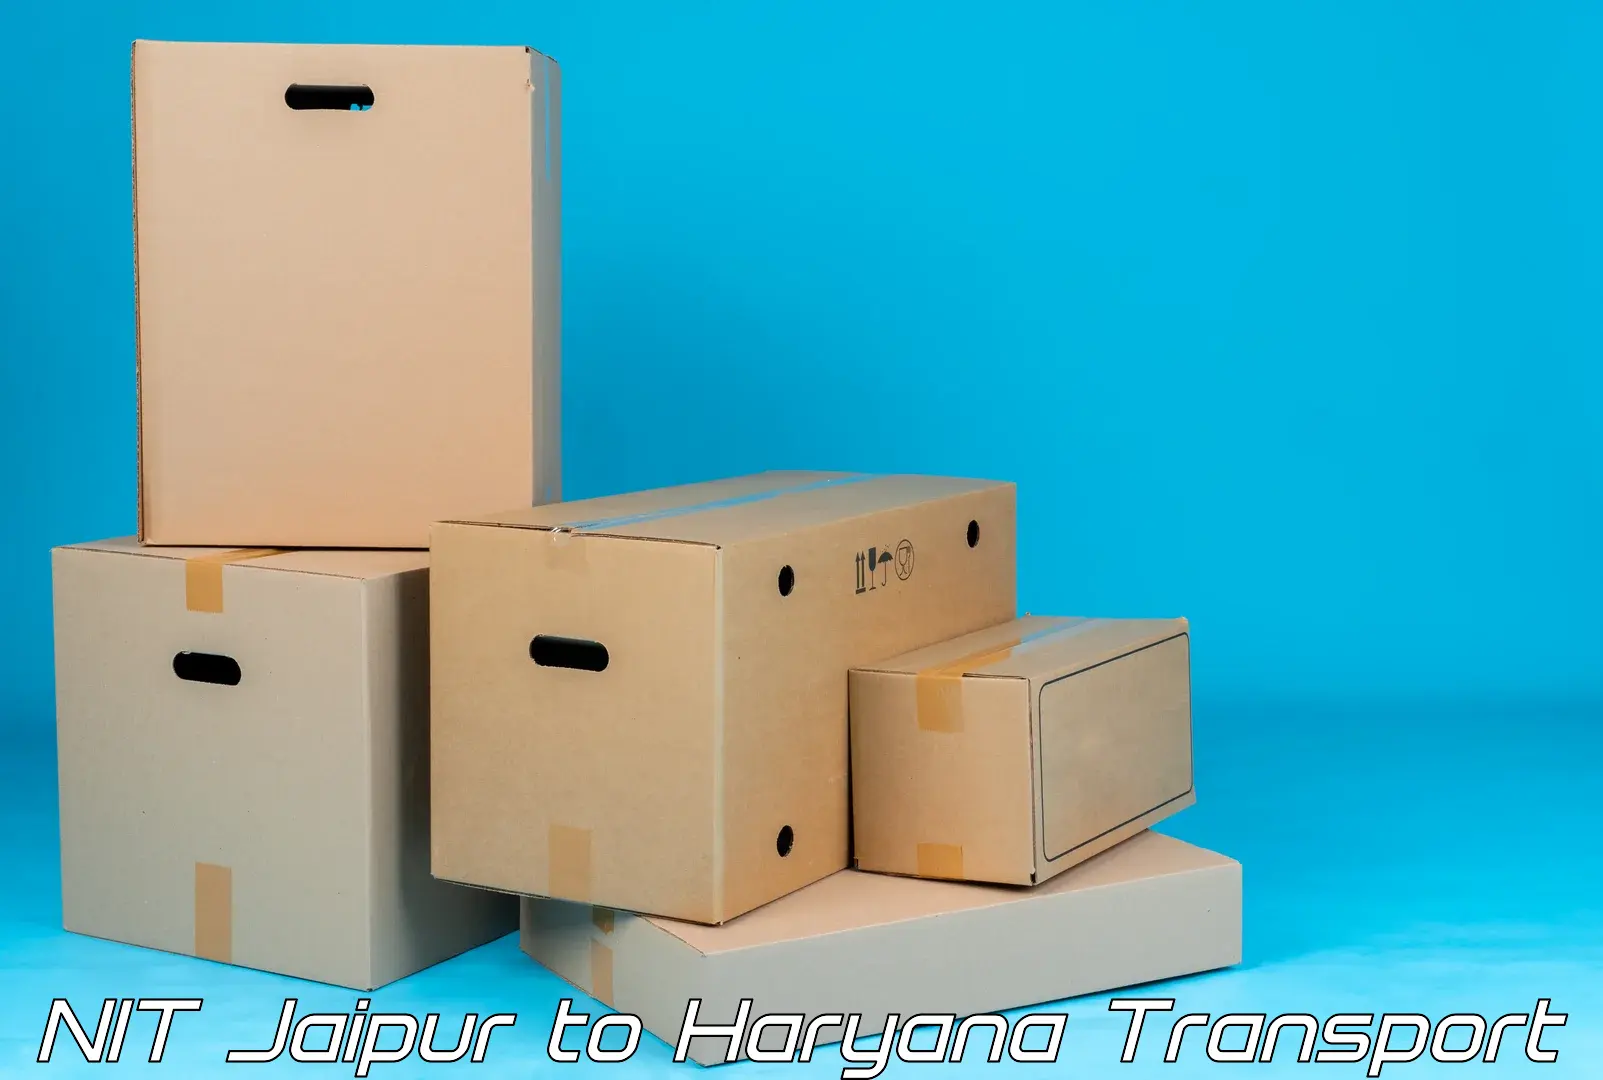 Logistics transportation services NIT Jaipur to NIT Kurukshetra